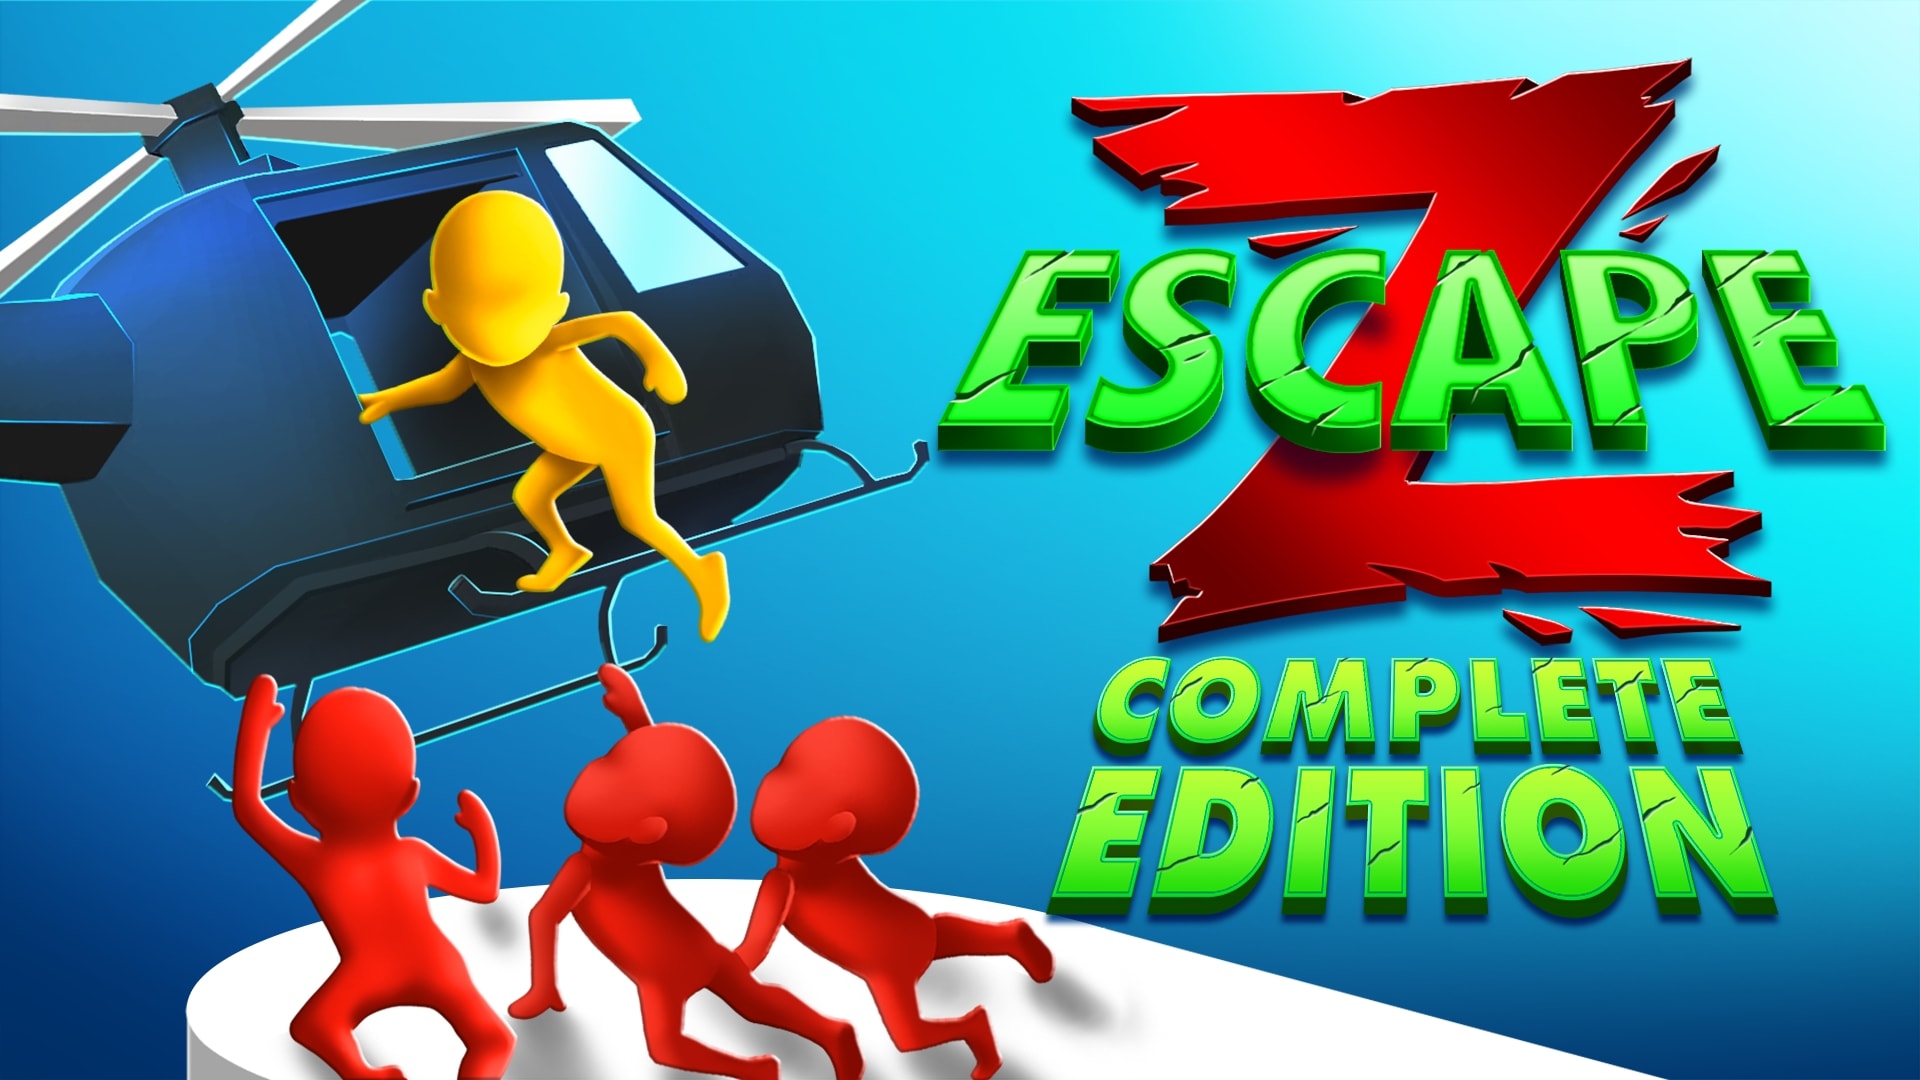 Z Escape: Complete Edition